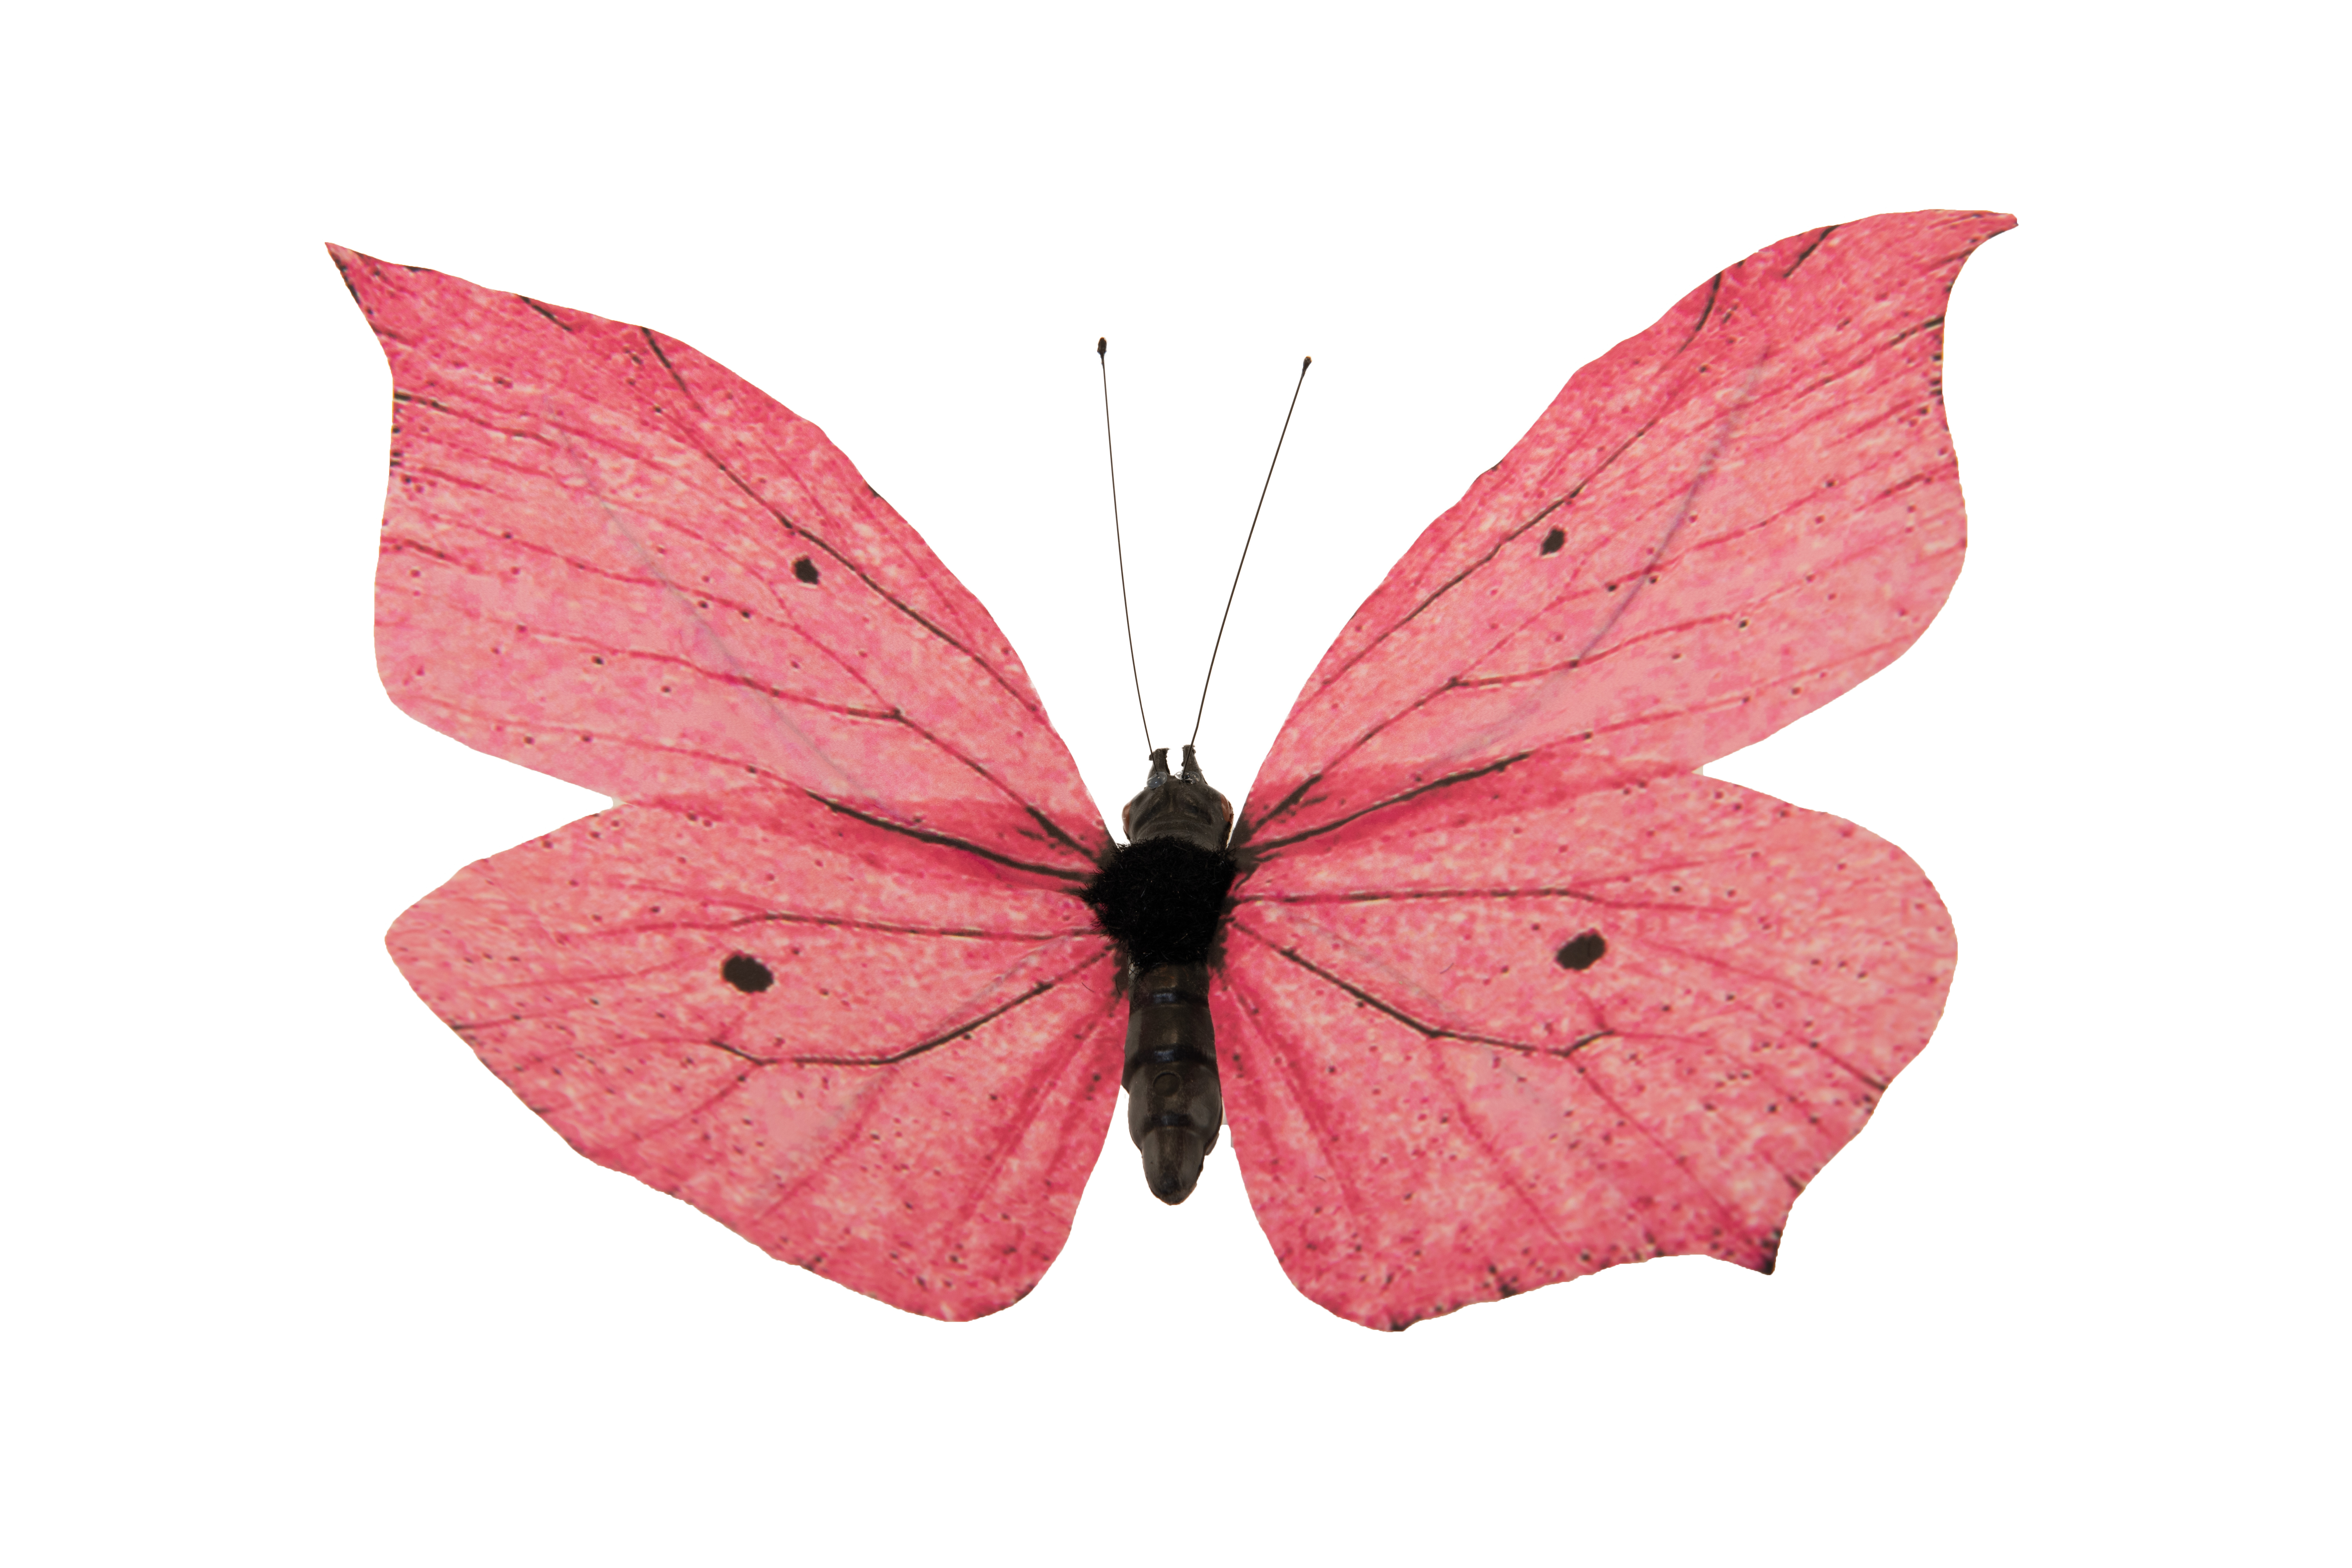 Schmetterling, 15x20cm aus Papier/Styropor, mit Draht für Befestigung